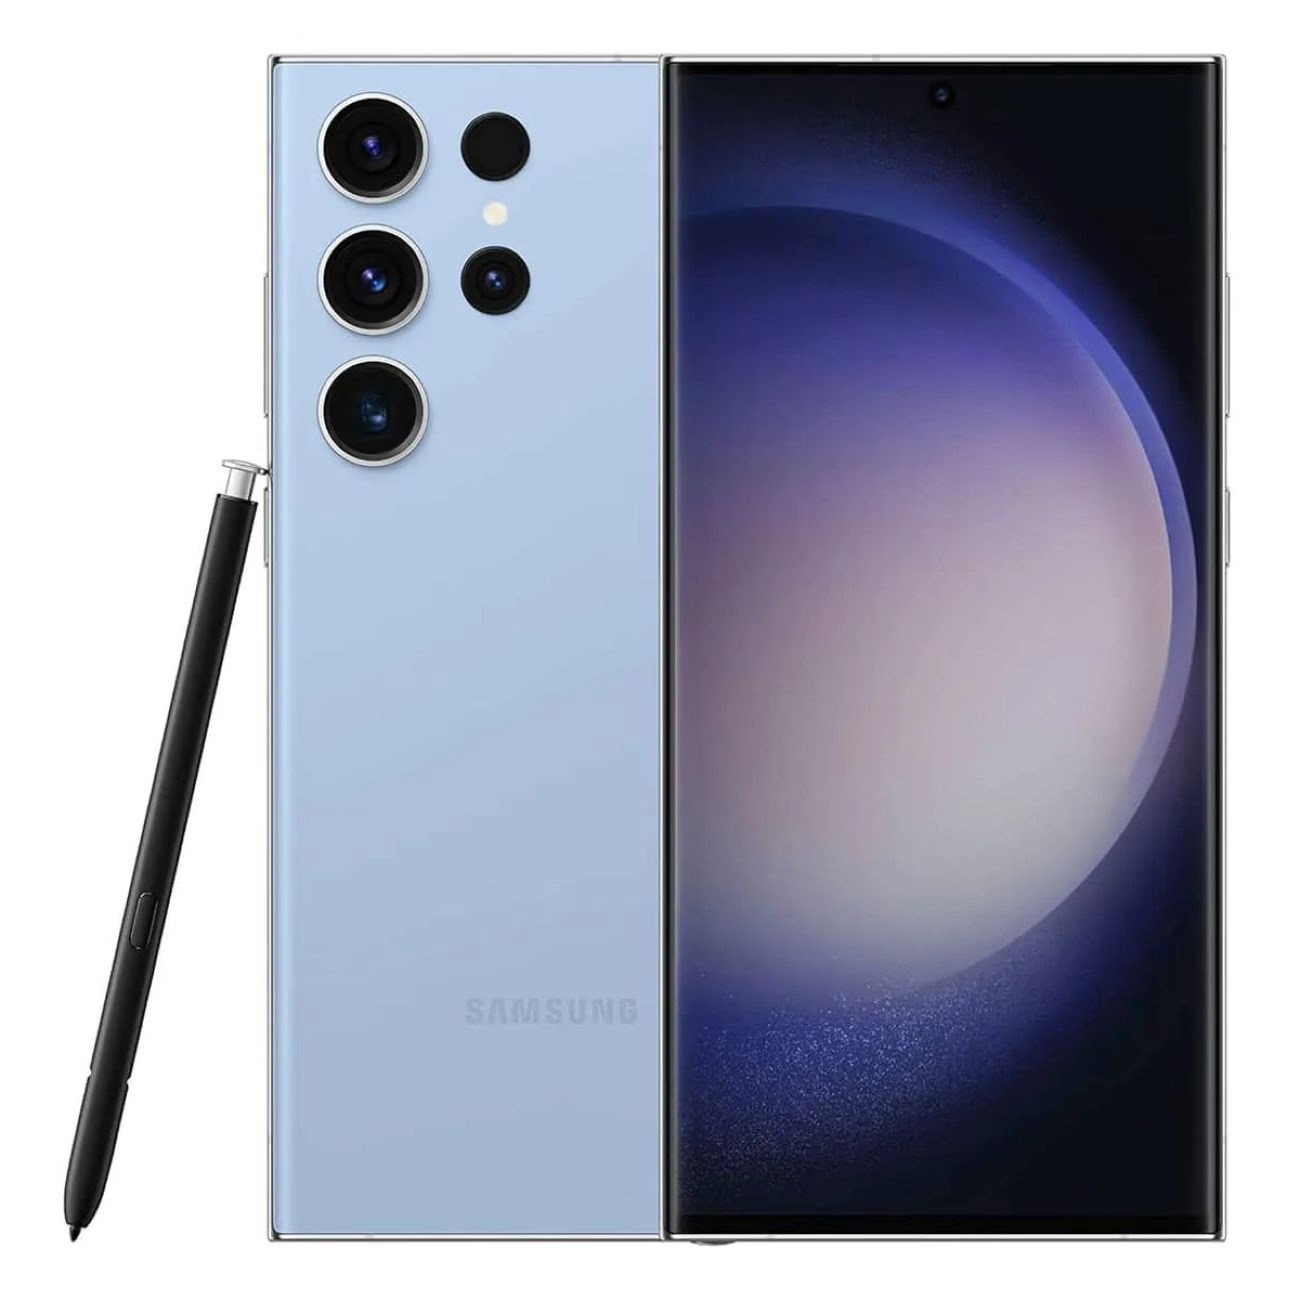 Купить смартфон samsung galaxy s23 ultra 12/512gb sky blue S-Серия в официальном магазине Apple, Samsung, Xiaomi. iPixel.ru Купить, заказ, кредит, рассрочка, отзывы,  характеристики, цена,  фотографии, в подарок.